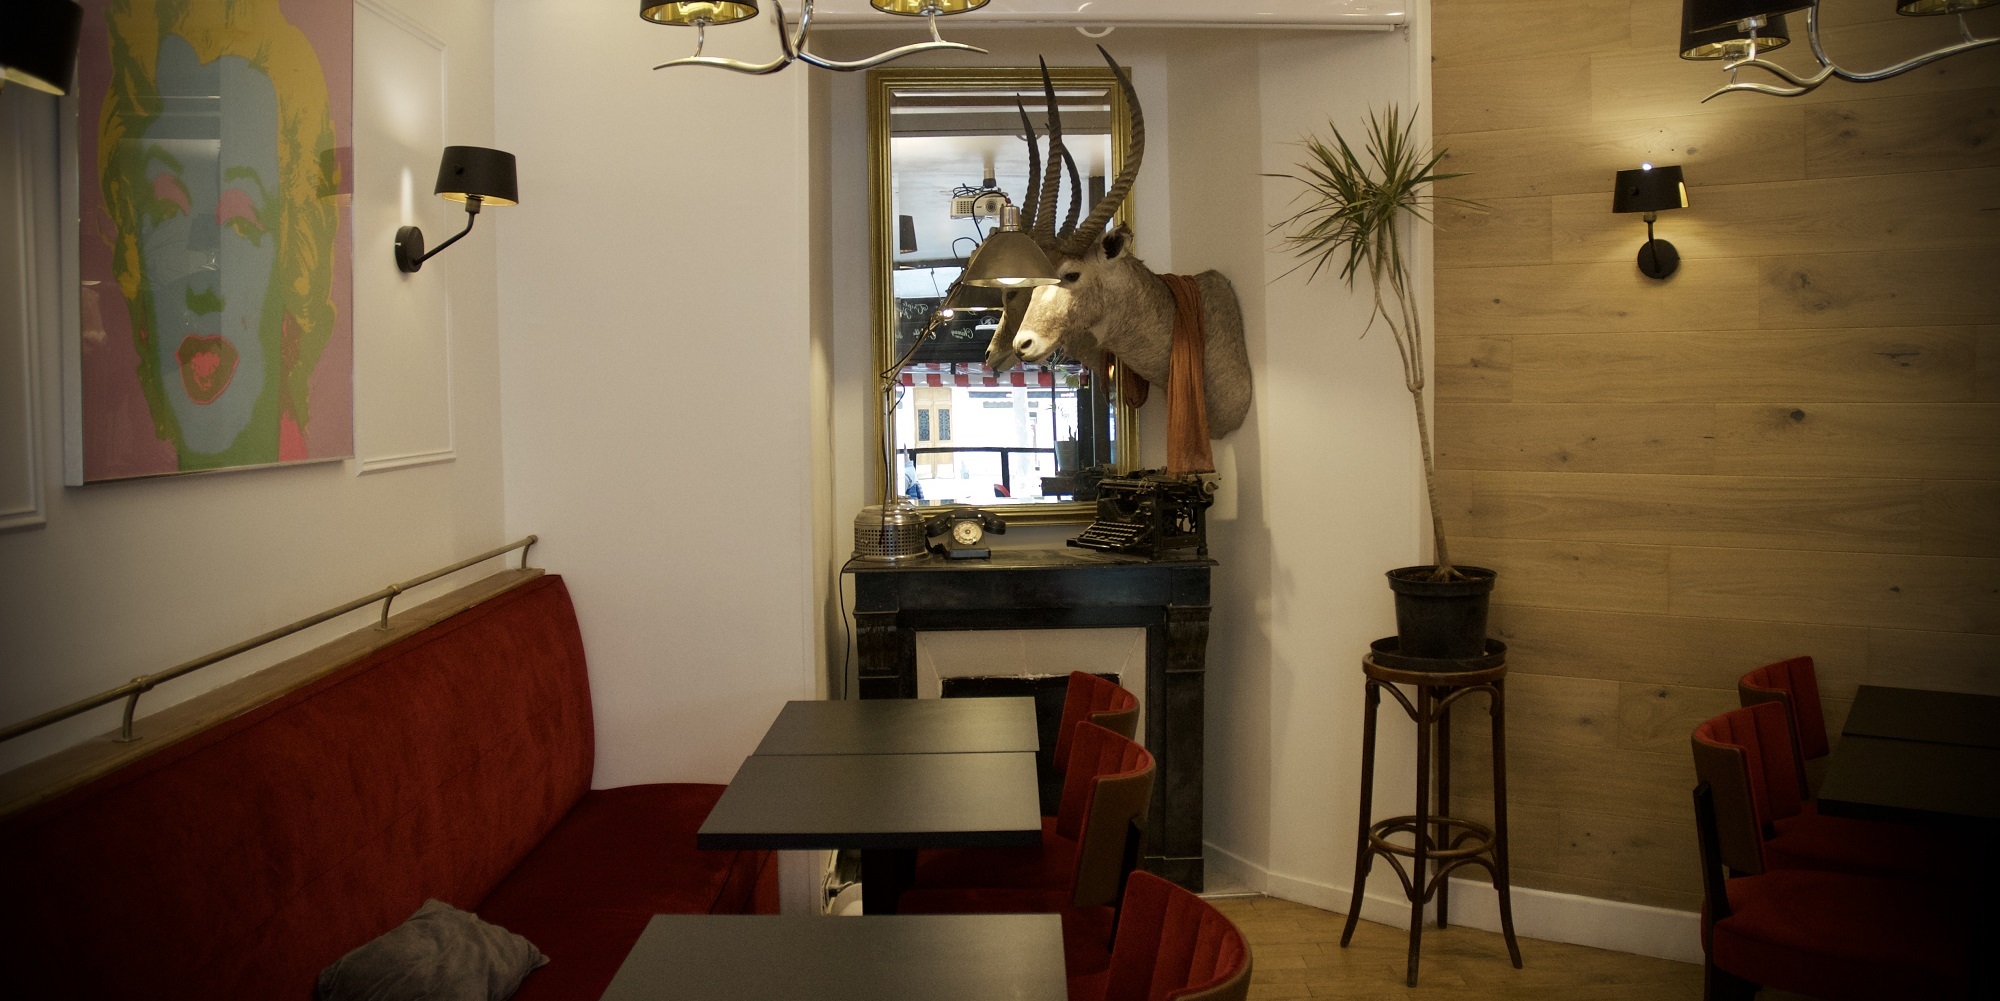 Brunch Harmony café (75014 Paris)